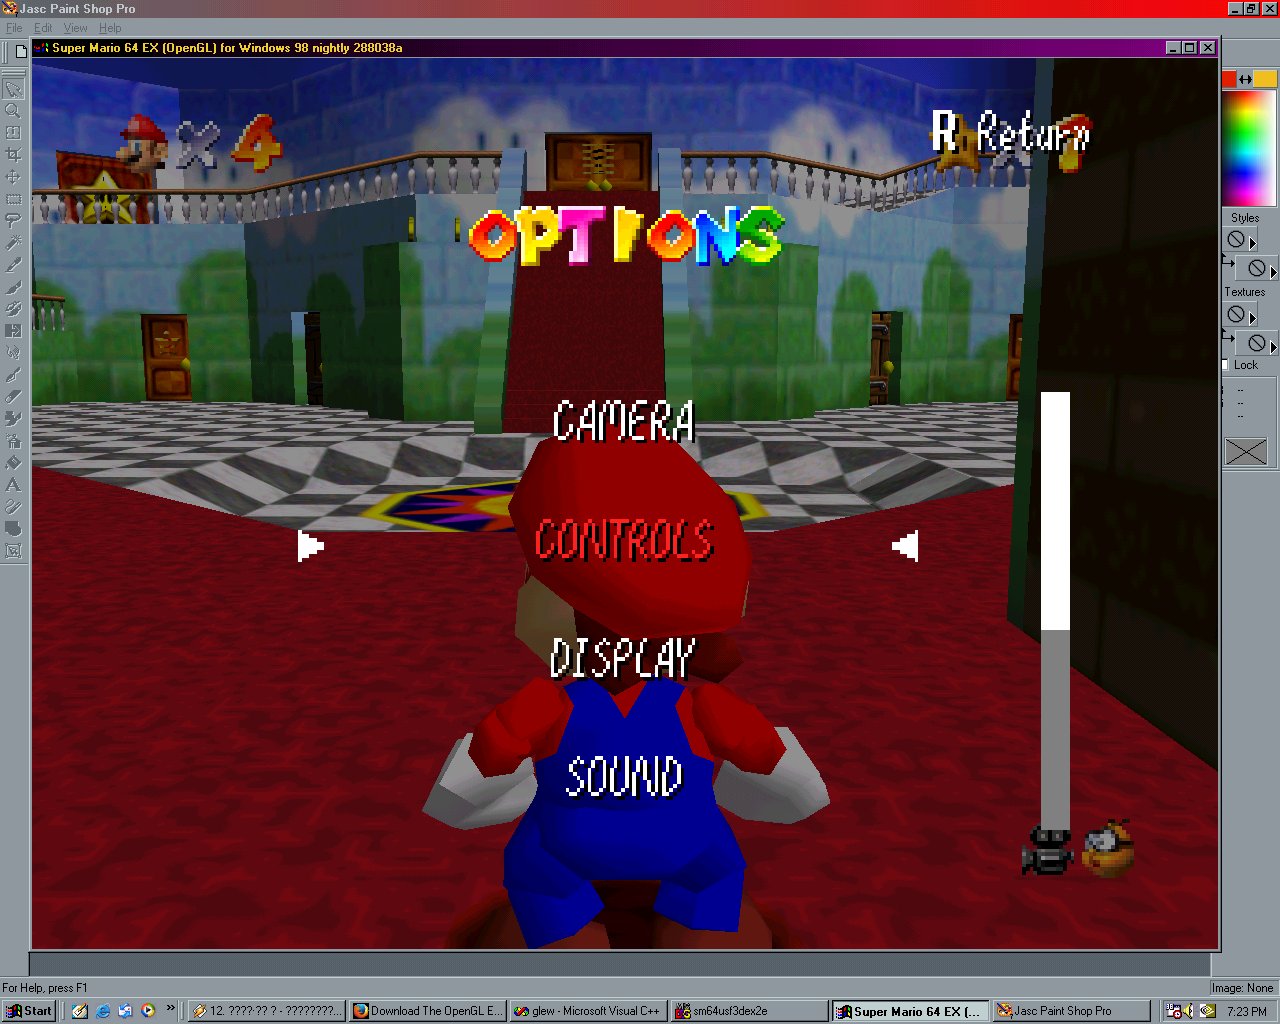 Super Mario PC (Windows game 1998) 